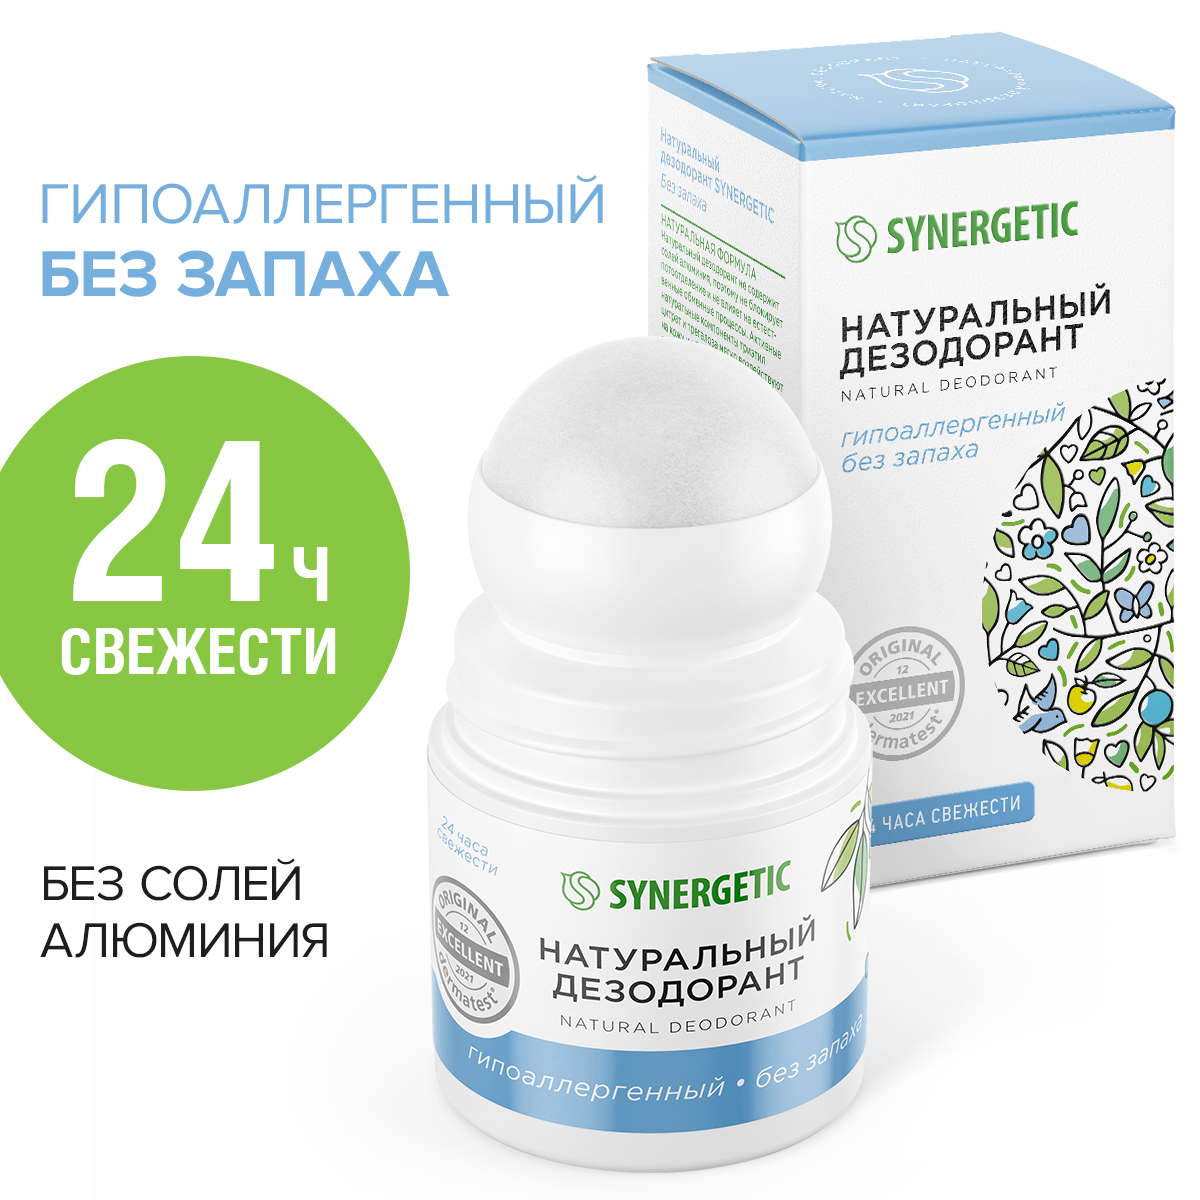 Натуральный дезодорант SYNERGETIC без запаха synergetic натуральный шампунь максимальное питание и восстановление 400